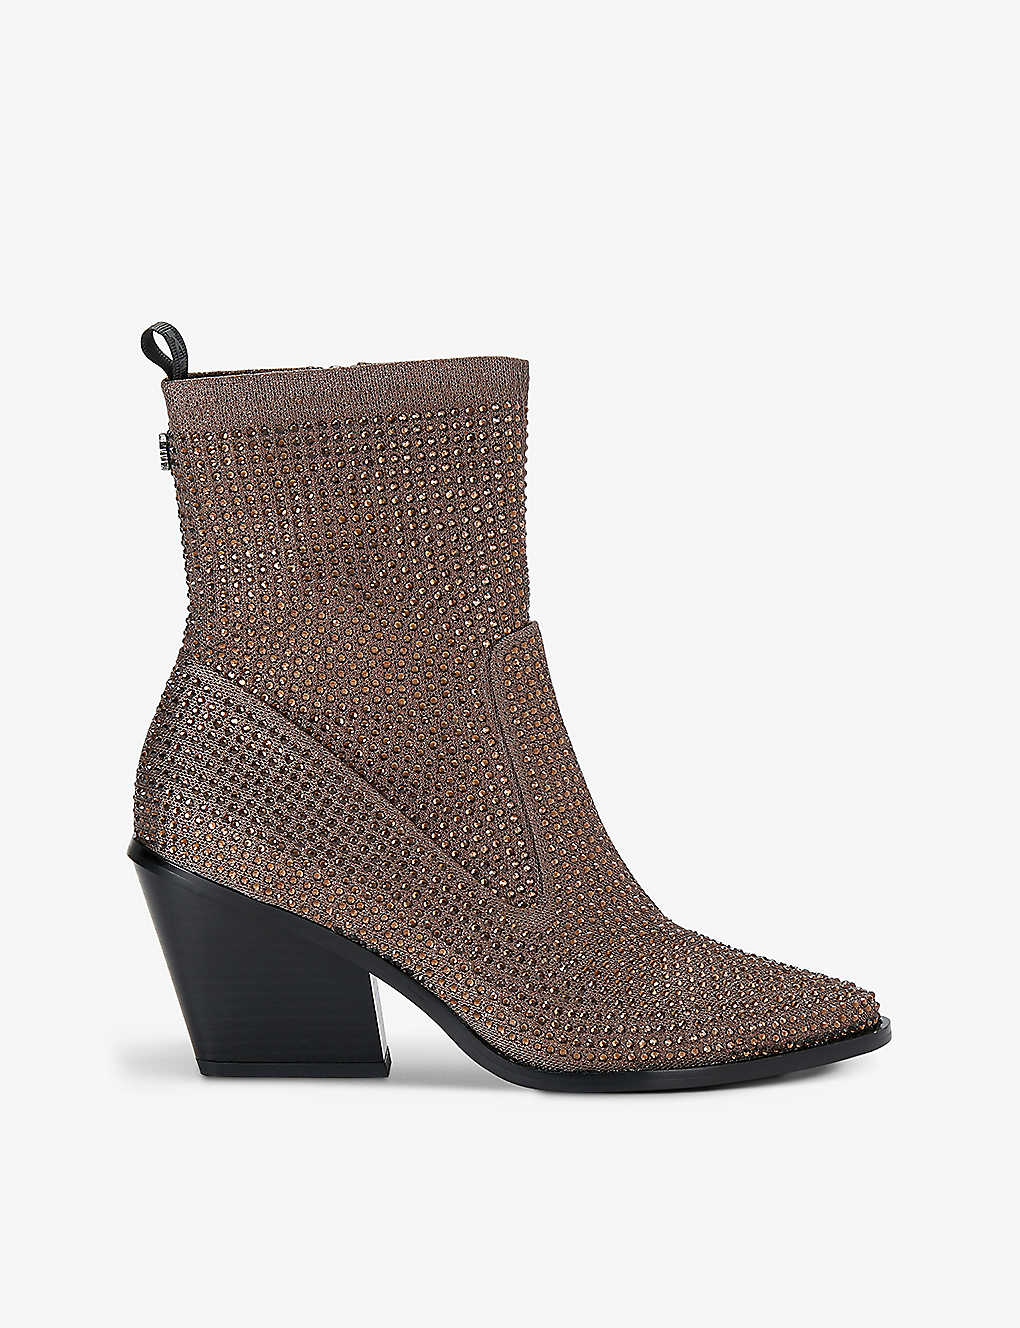 Kg Kurt Geiger Womens Brown Sabrina Crystal-embellished Heeled Ankle Boots